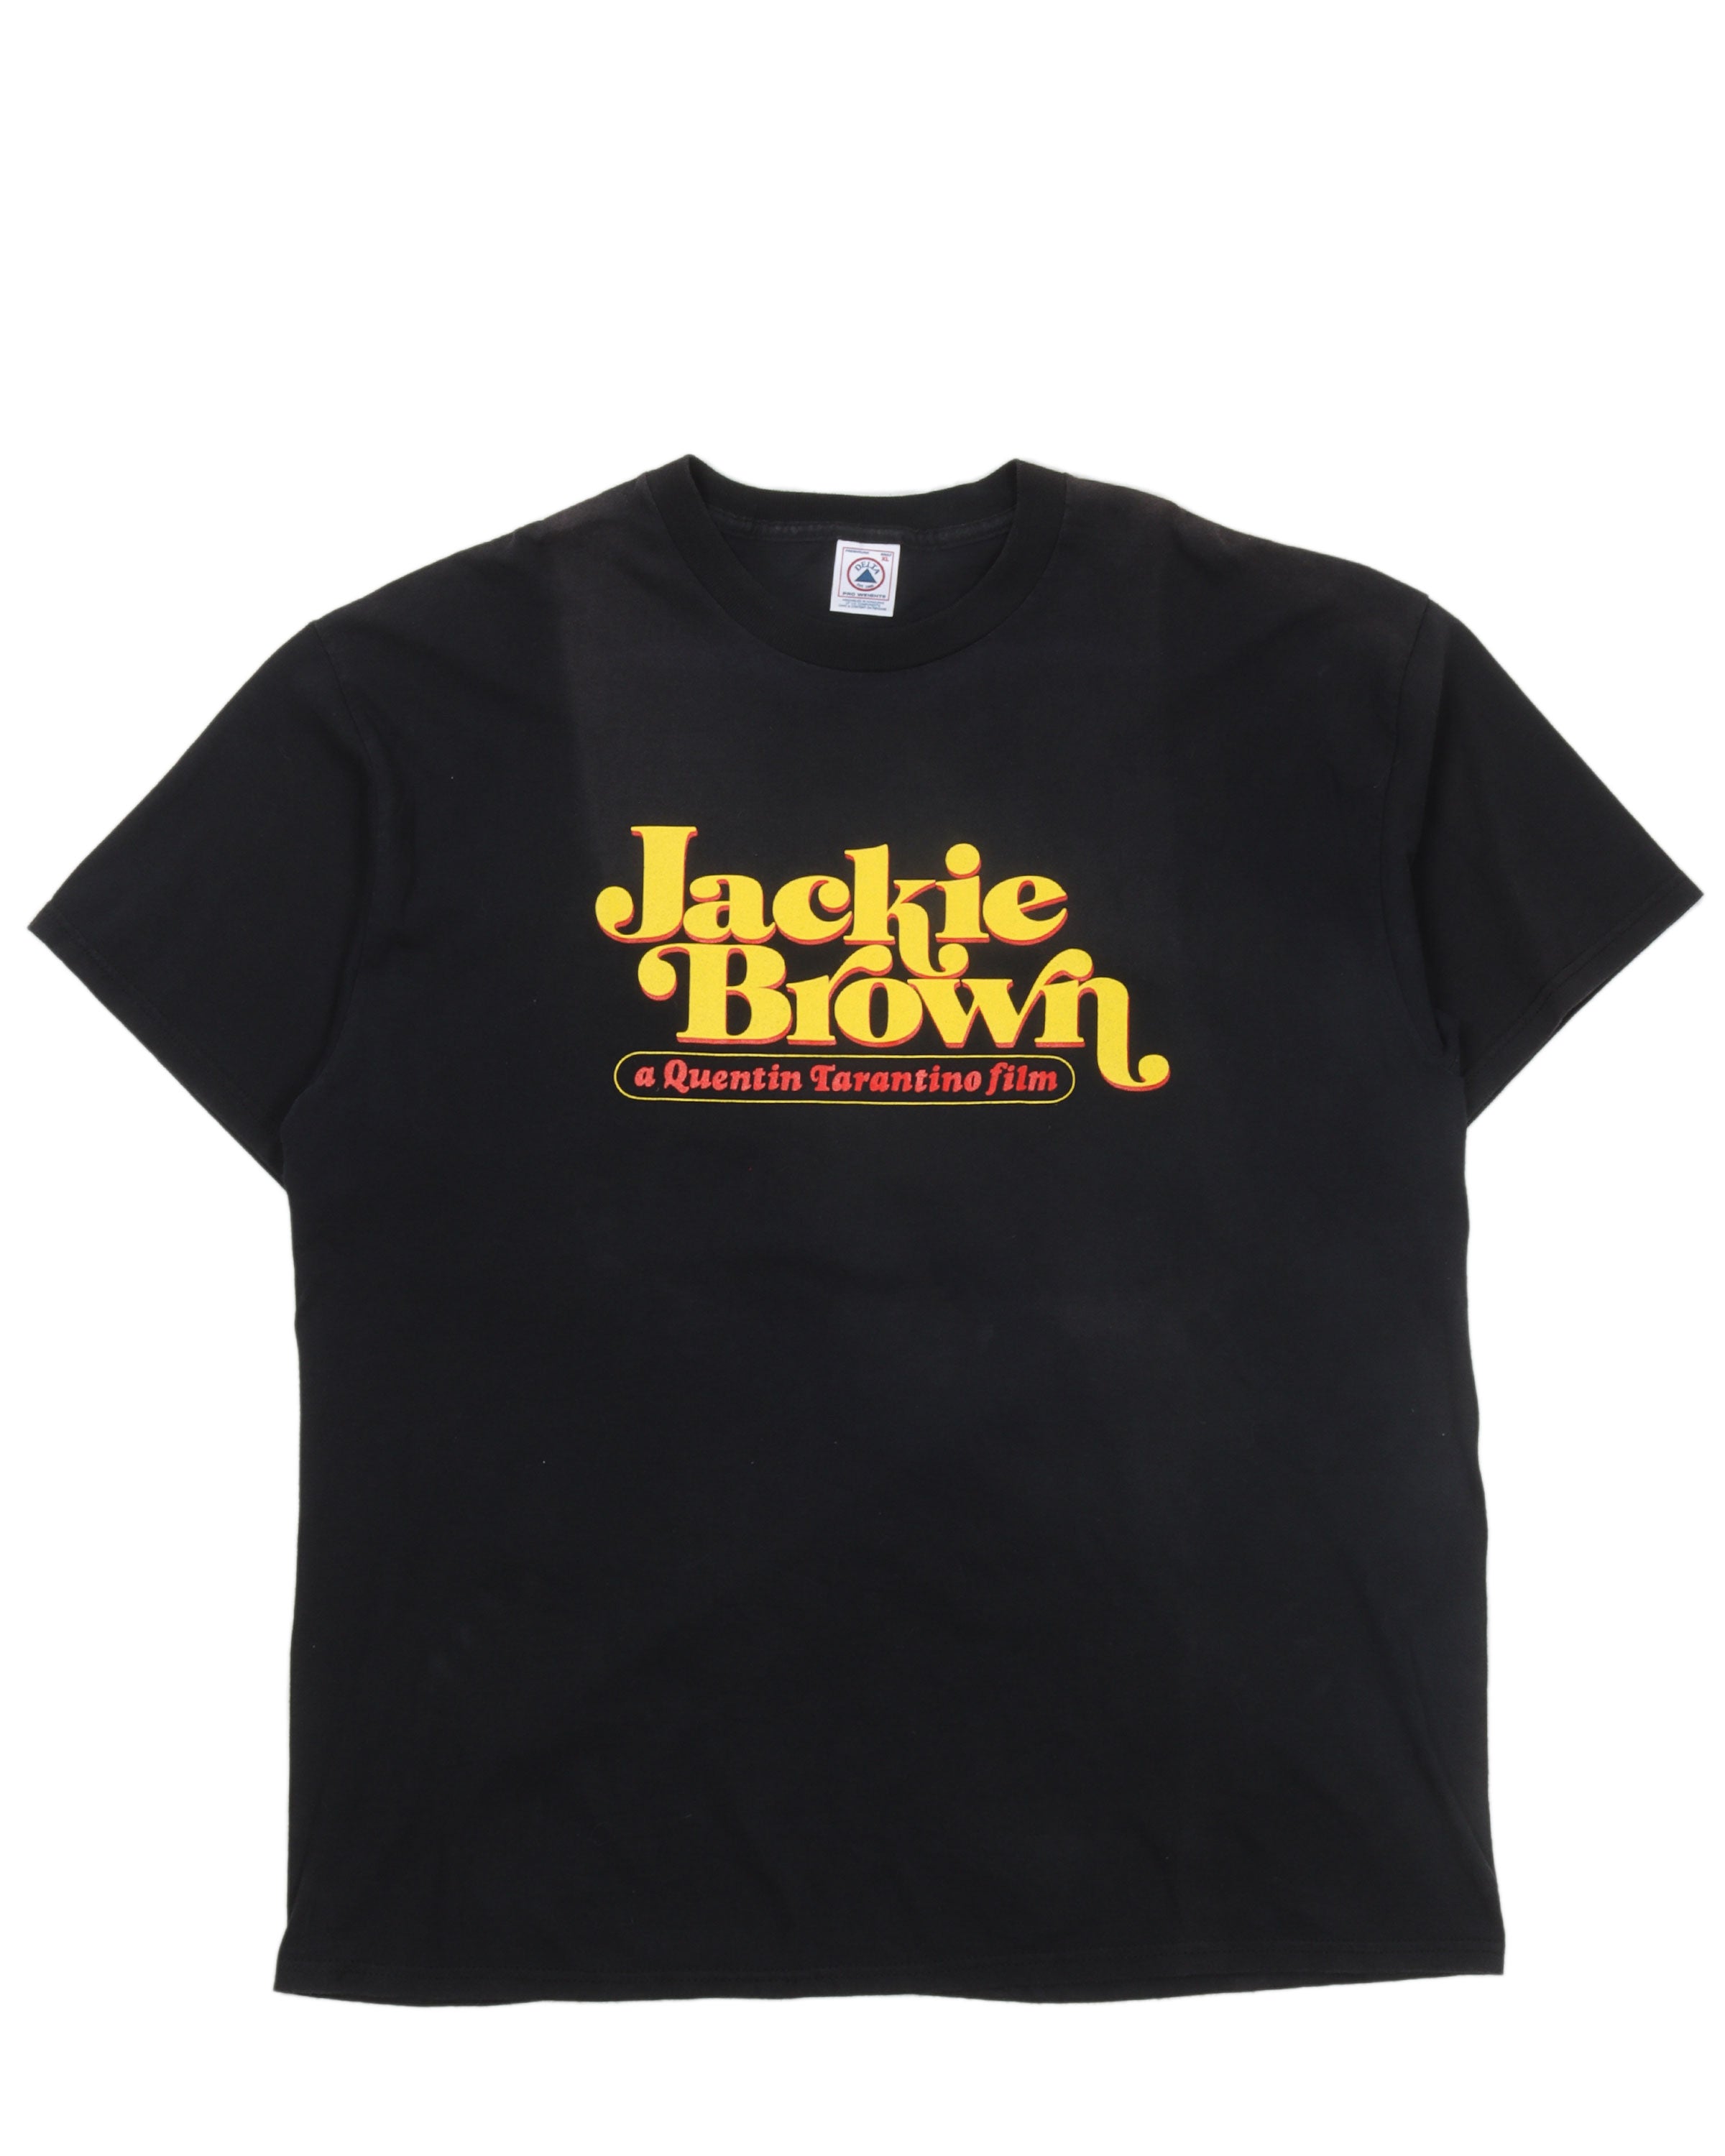 "Jackie Brown" Movie T-Shirt